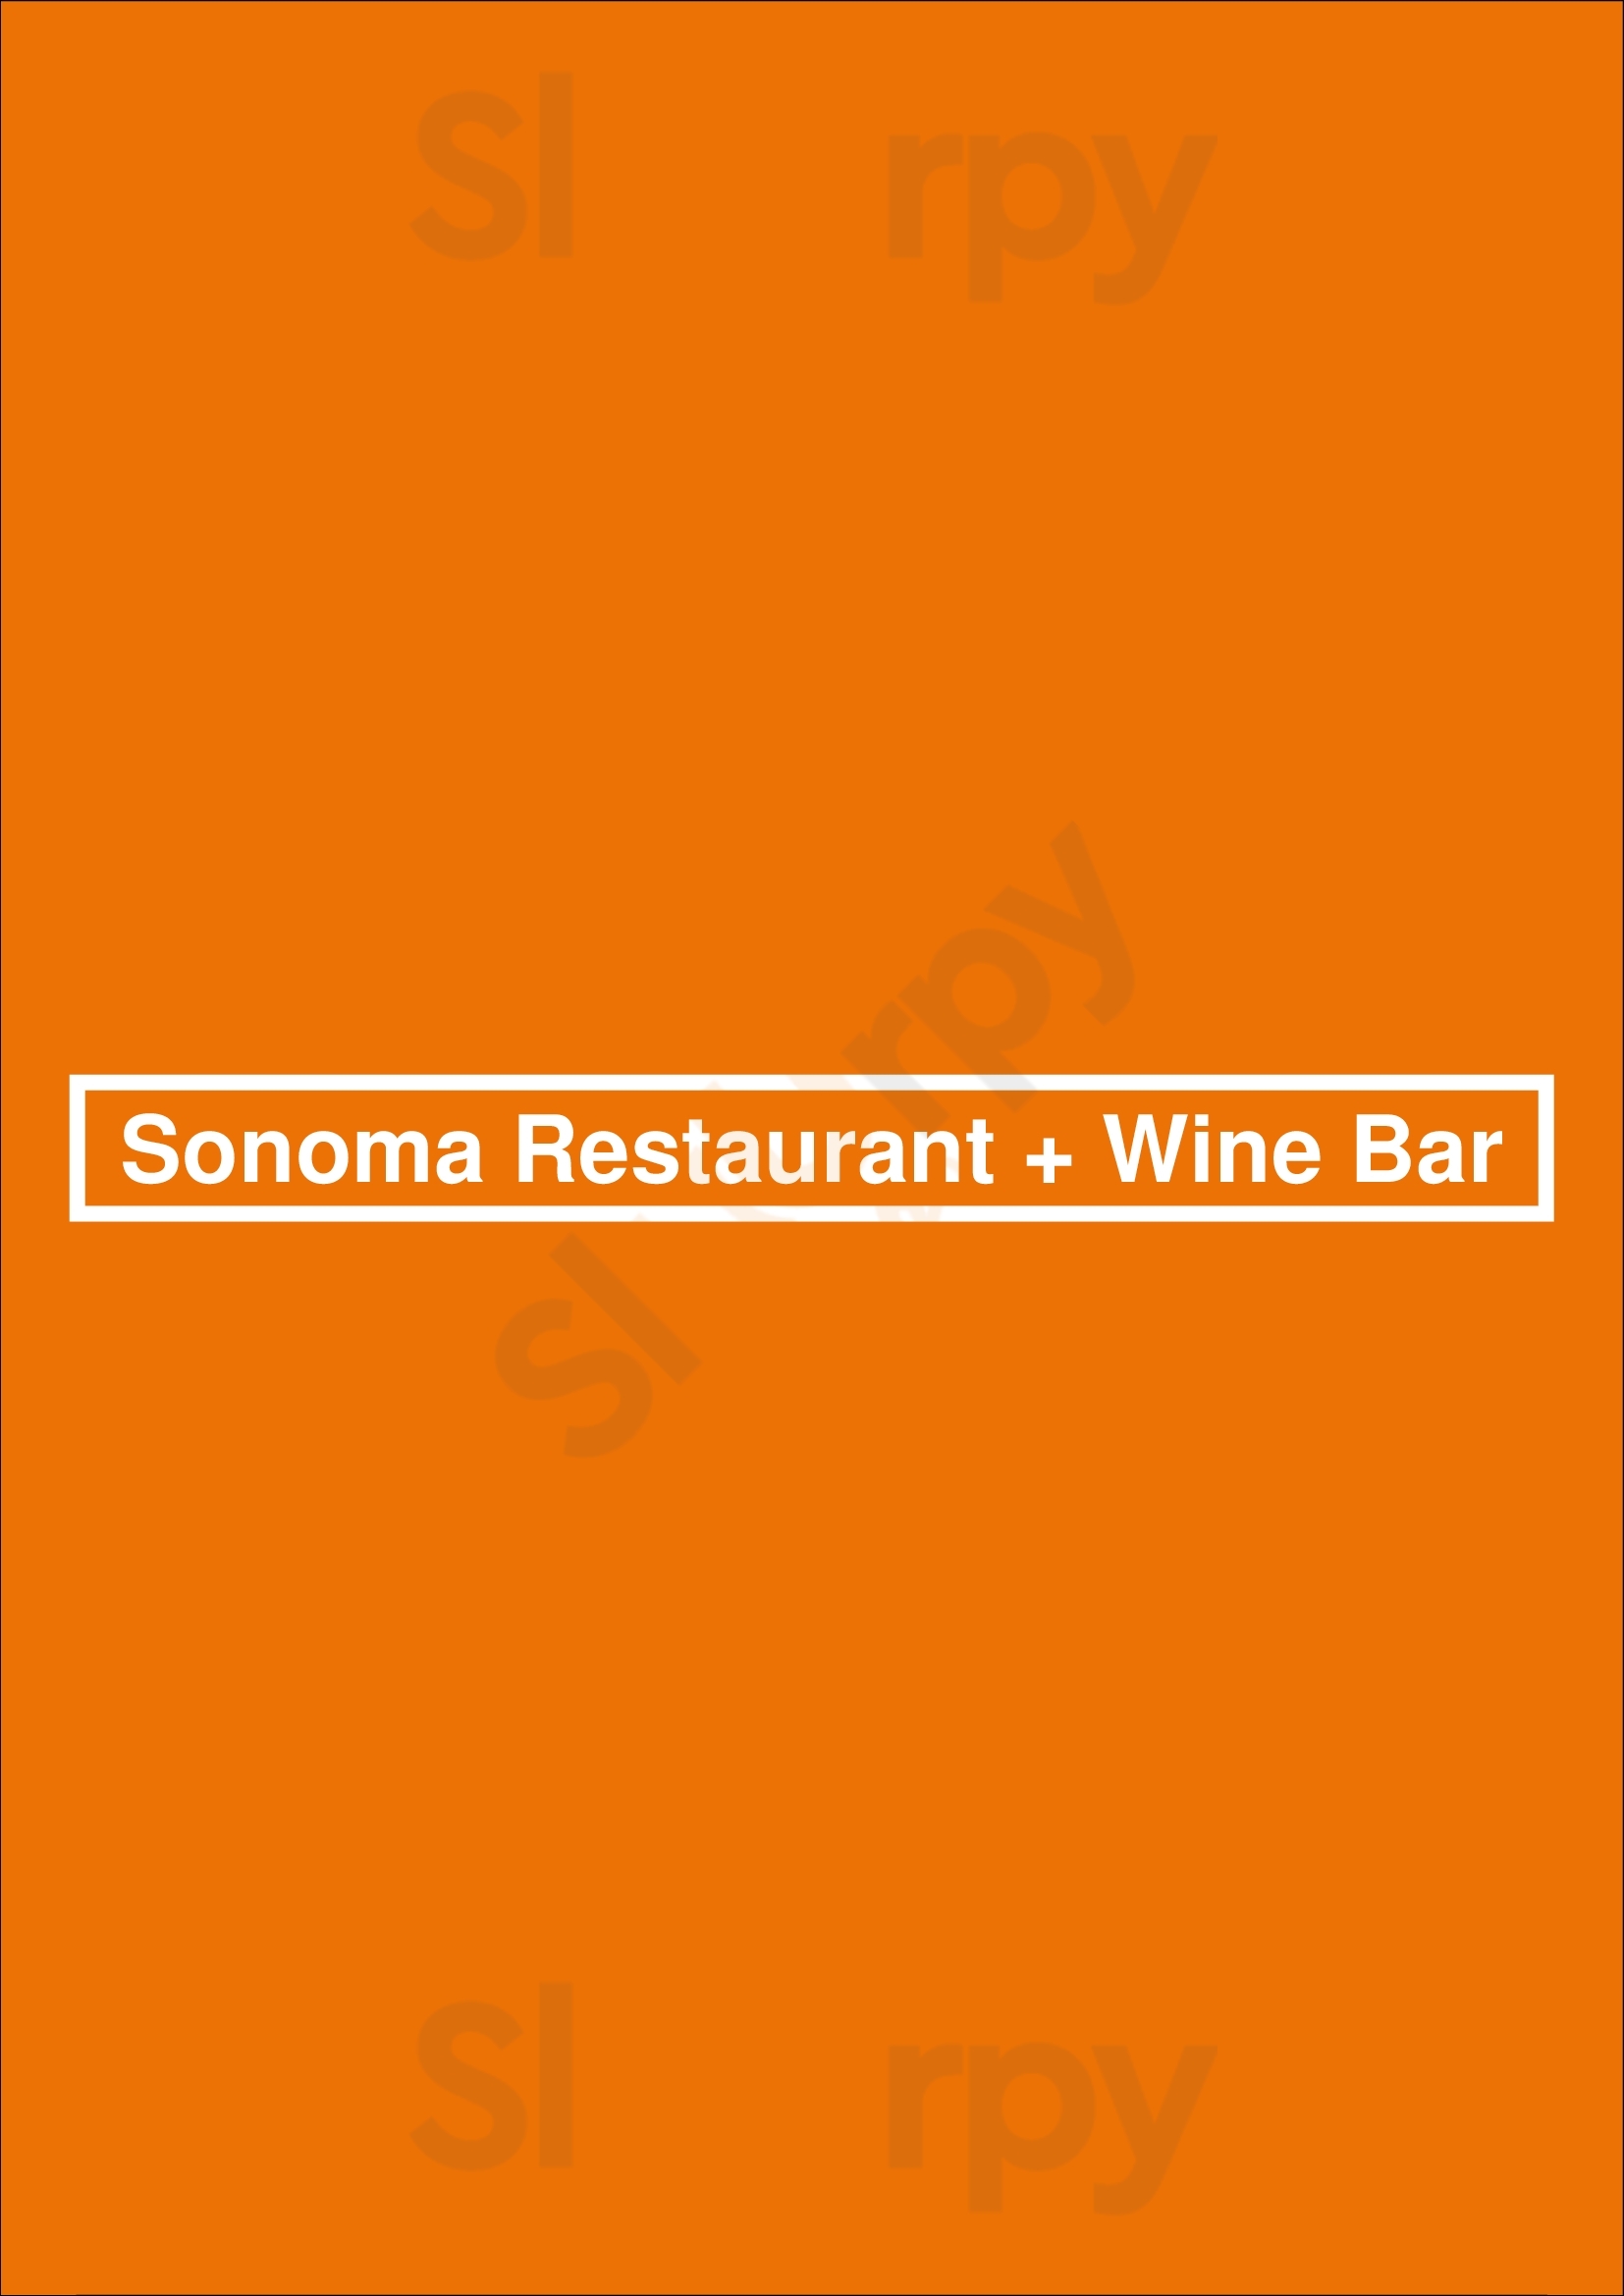 Sonoma Restaurant + Wine Bar Washington DC Menu - 1